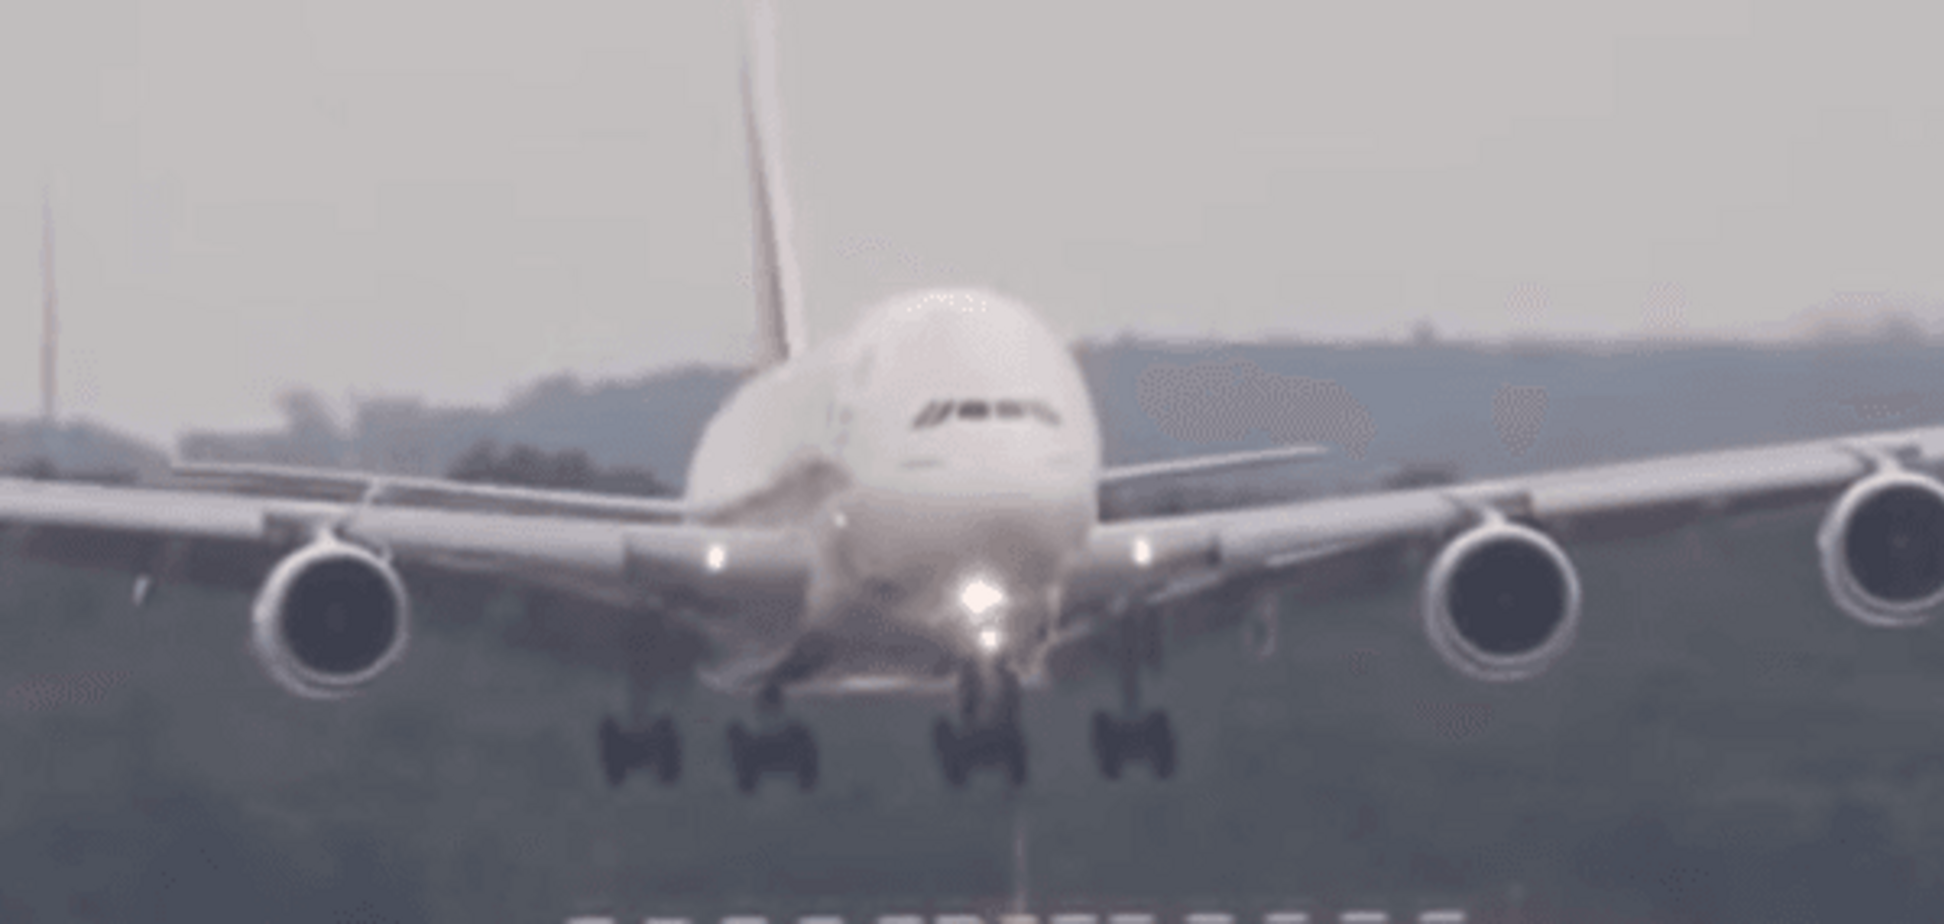 Пилот мастерски посадил самый большой в мире самолёт при штормовом ветре: опубликовано видео